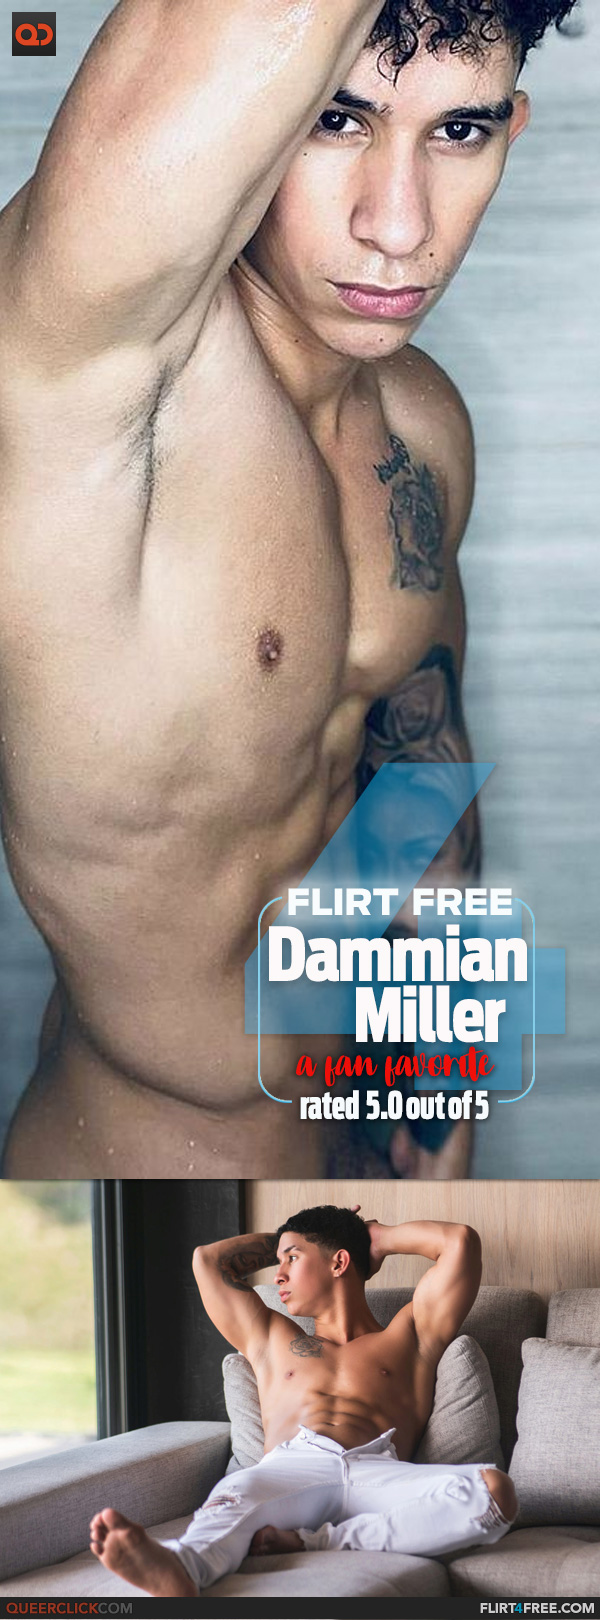 Flirt4Free: Dammian Miller, aka dammian-miller